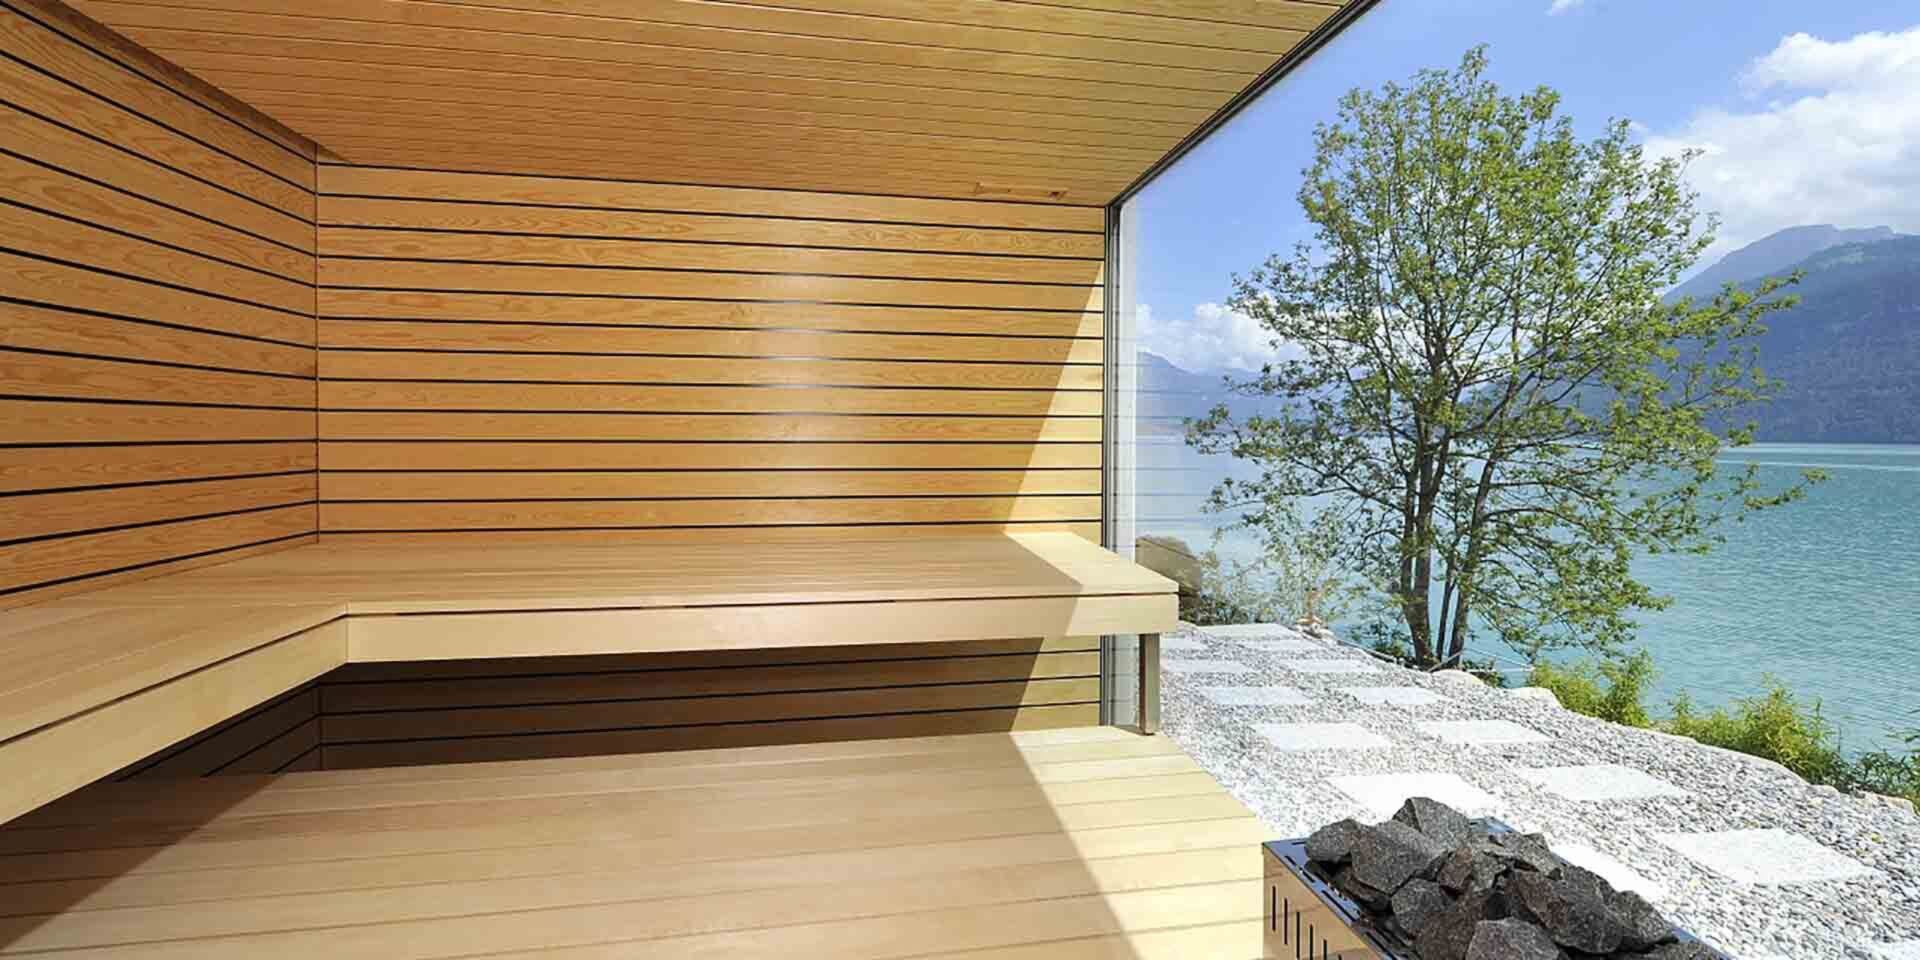 Aussensauna outdoor finnische sauna aussicht glas